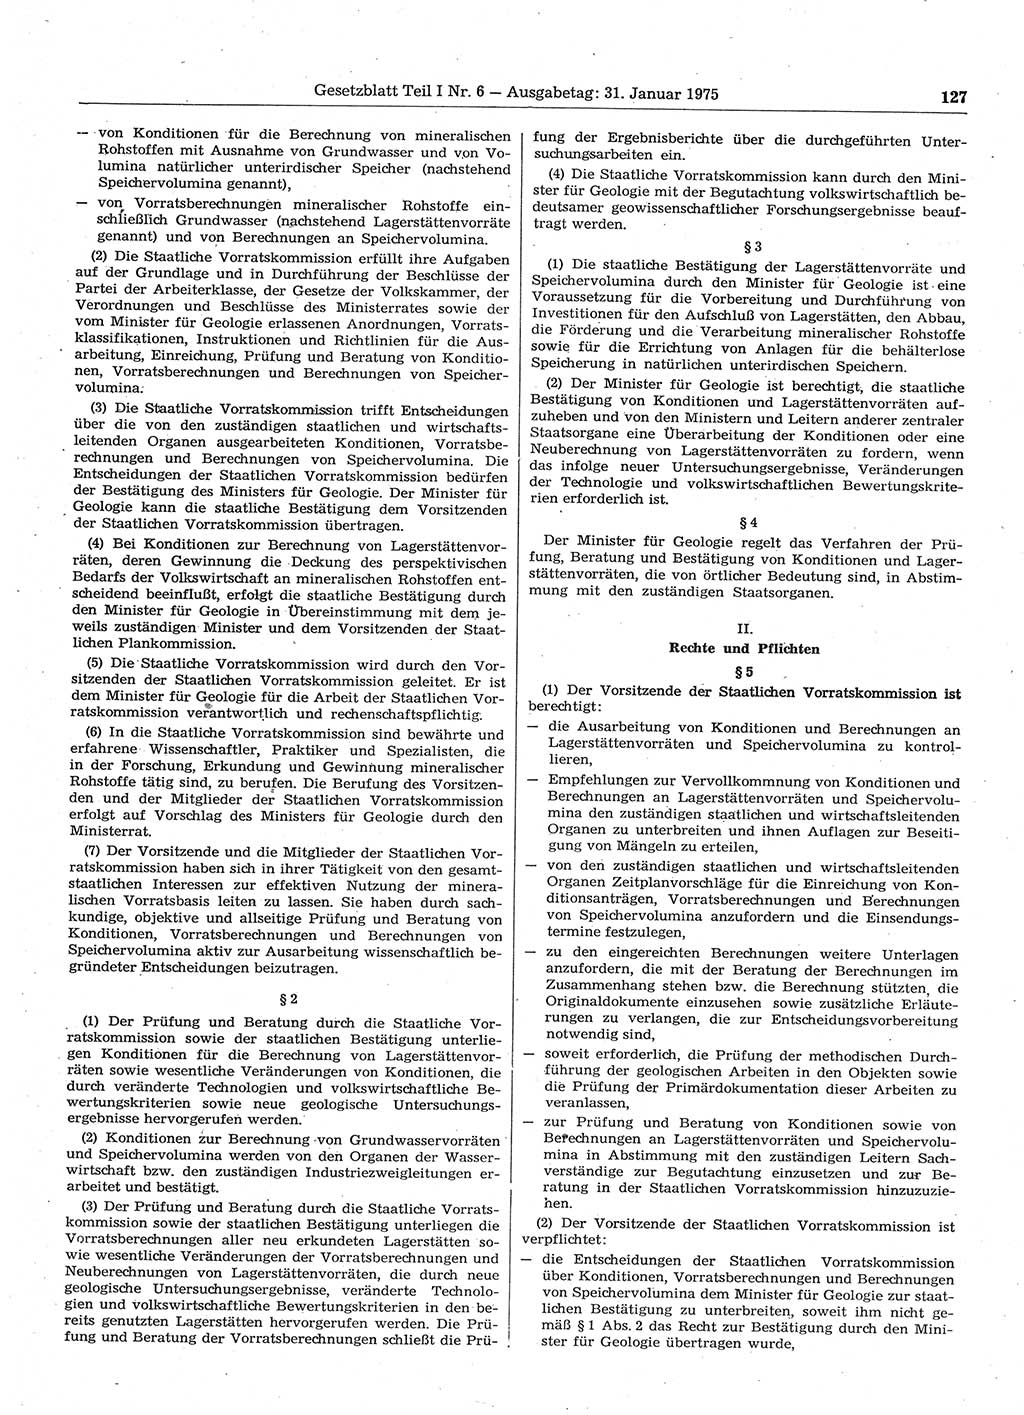 Gesetzblatt (GBl.) der Deutschen Demokratischen Republik (DDR) Teil Ⅰ 1975, Seite 127 (GBl. DDR Ⅰ 1975, S. 127)